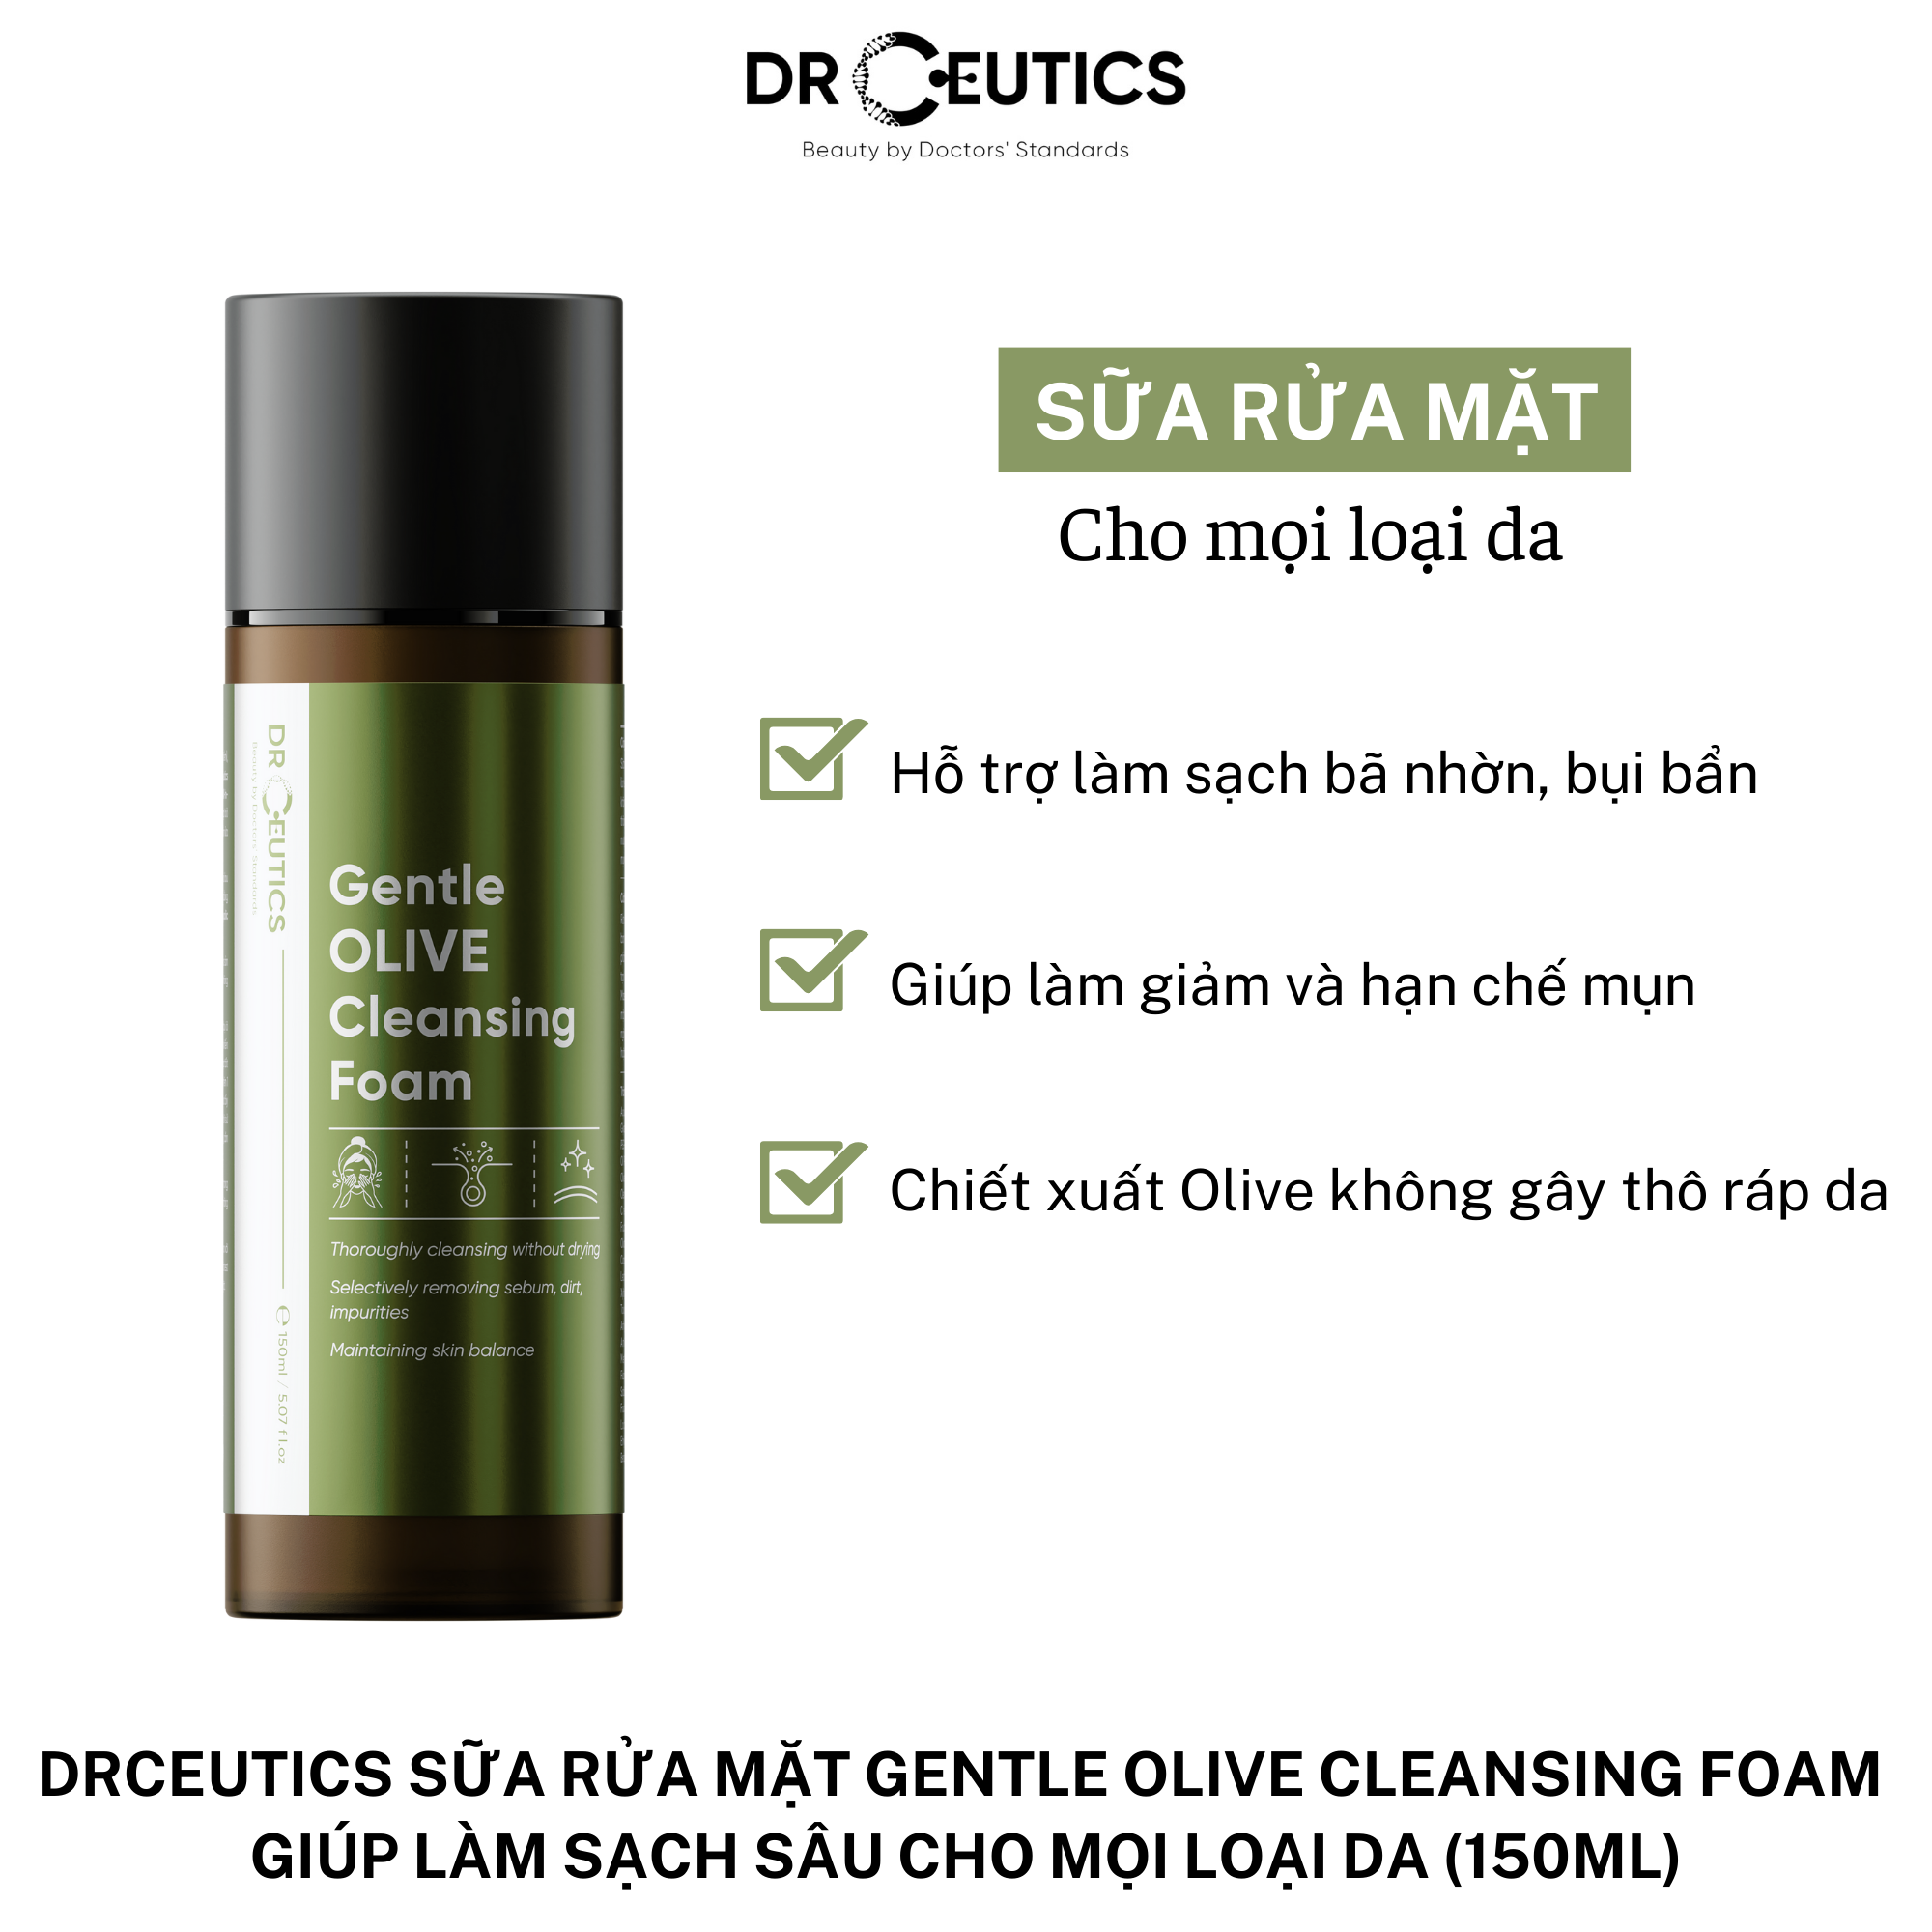 DRCEUTICS Sữa Rửa Mặt Gentle Olive Cleansing Foam Giúp Làm Sạch Sâu Cho Mọi Loại Da (150ml) Chưa Có Đánh Giá 0